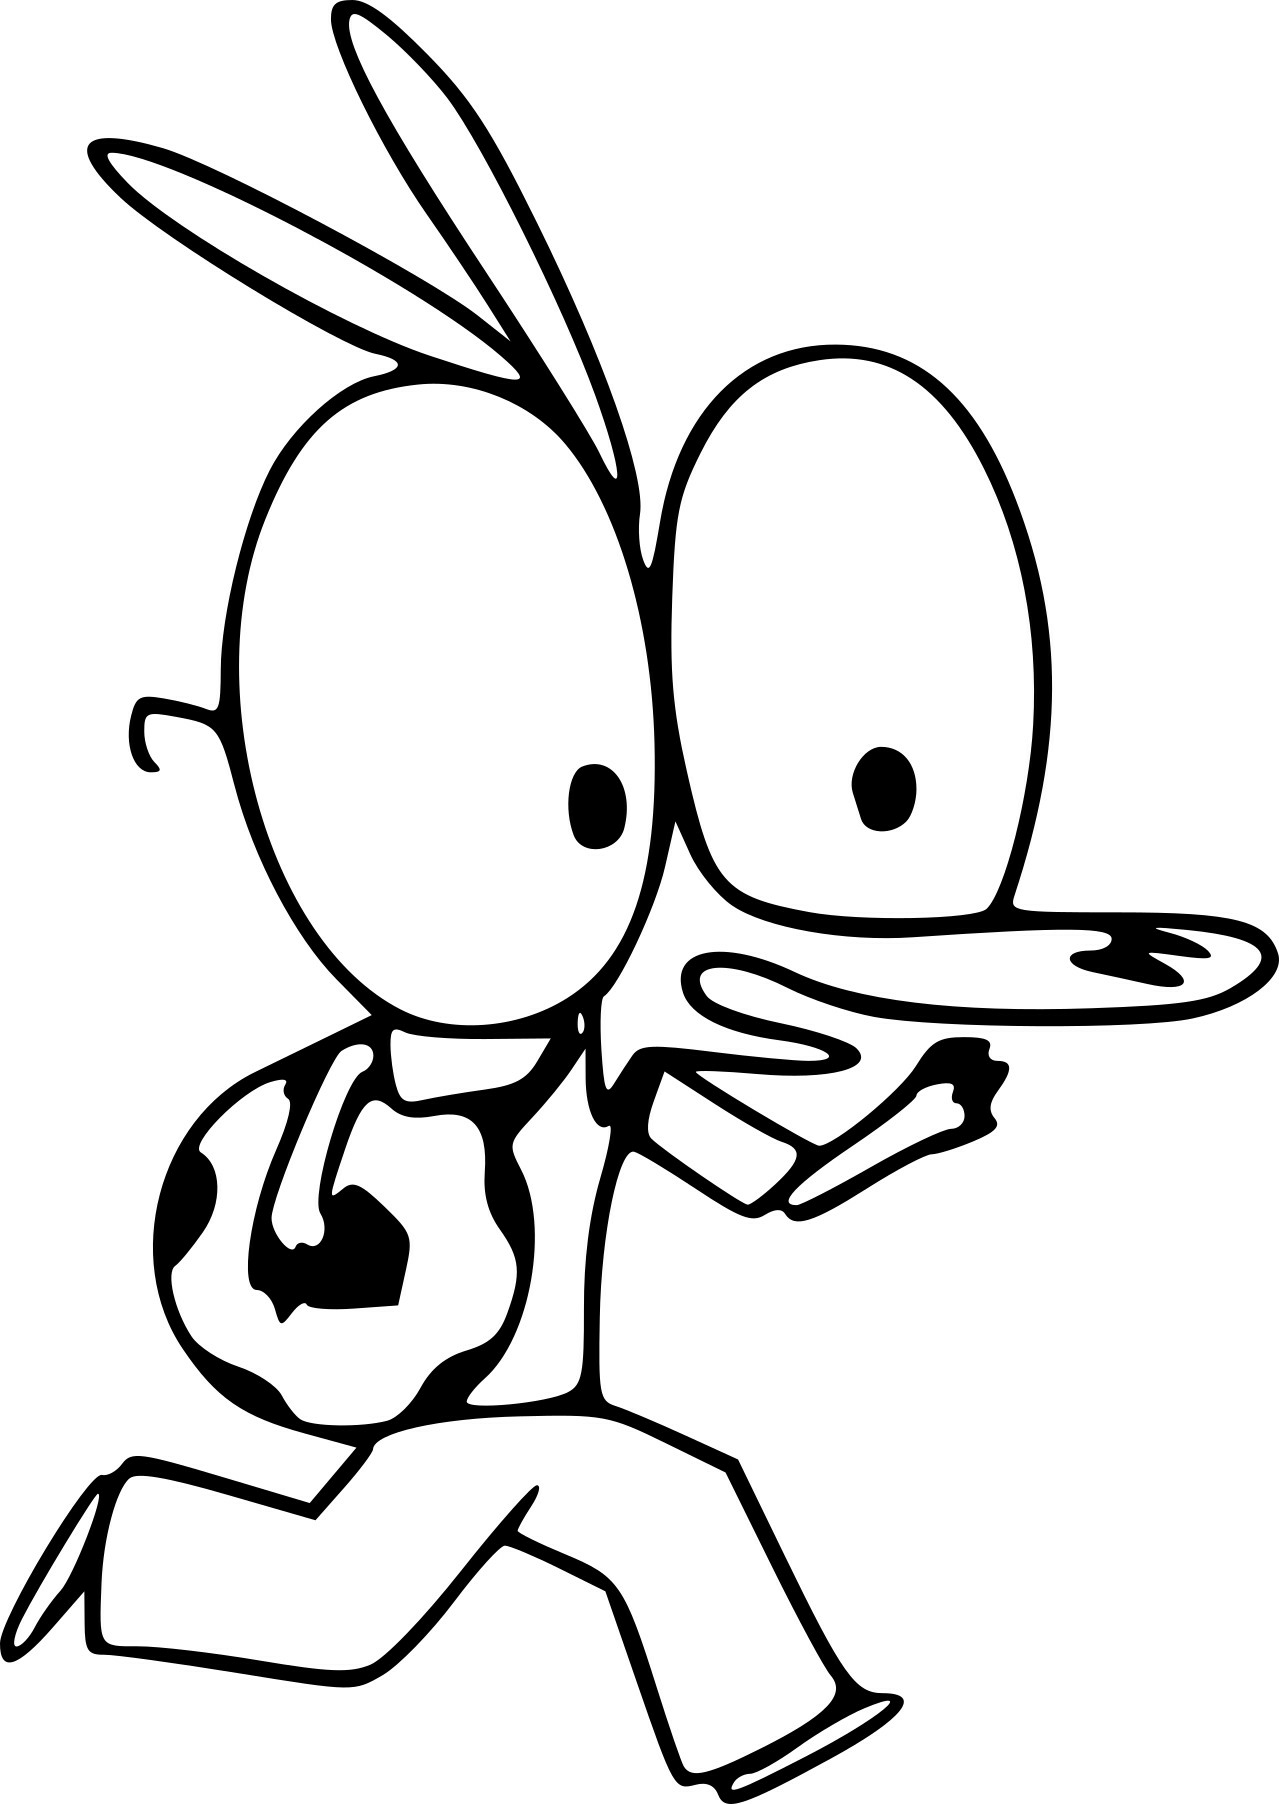   Un personnage de dessin animé tenant un frisbee 